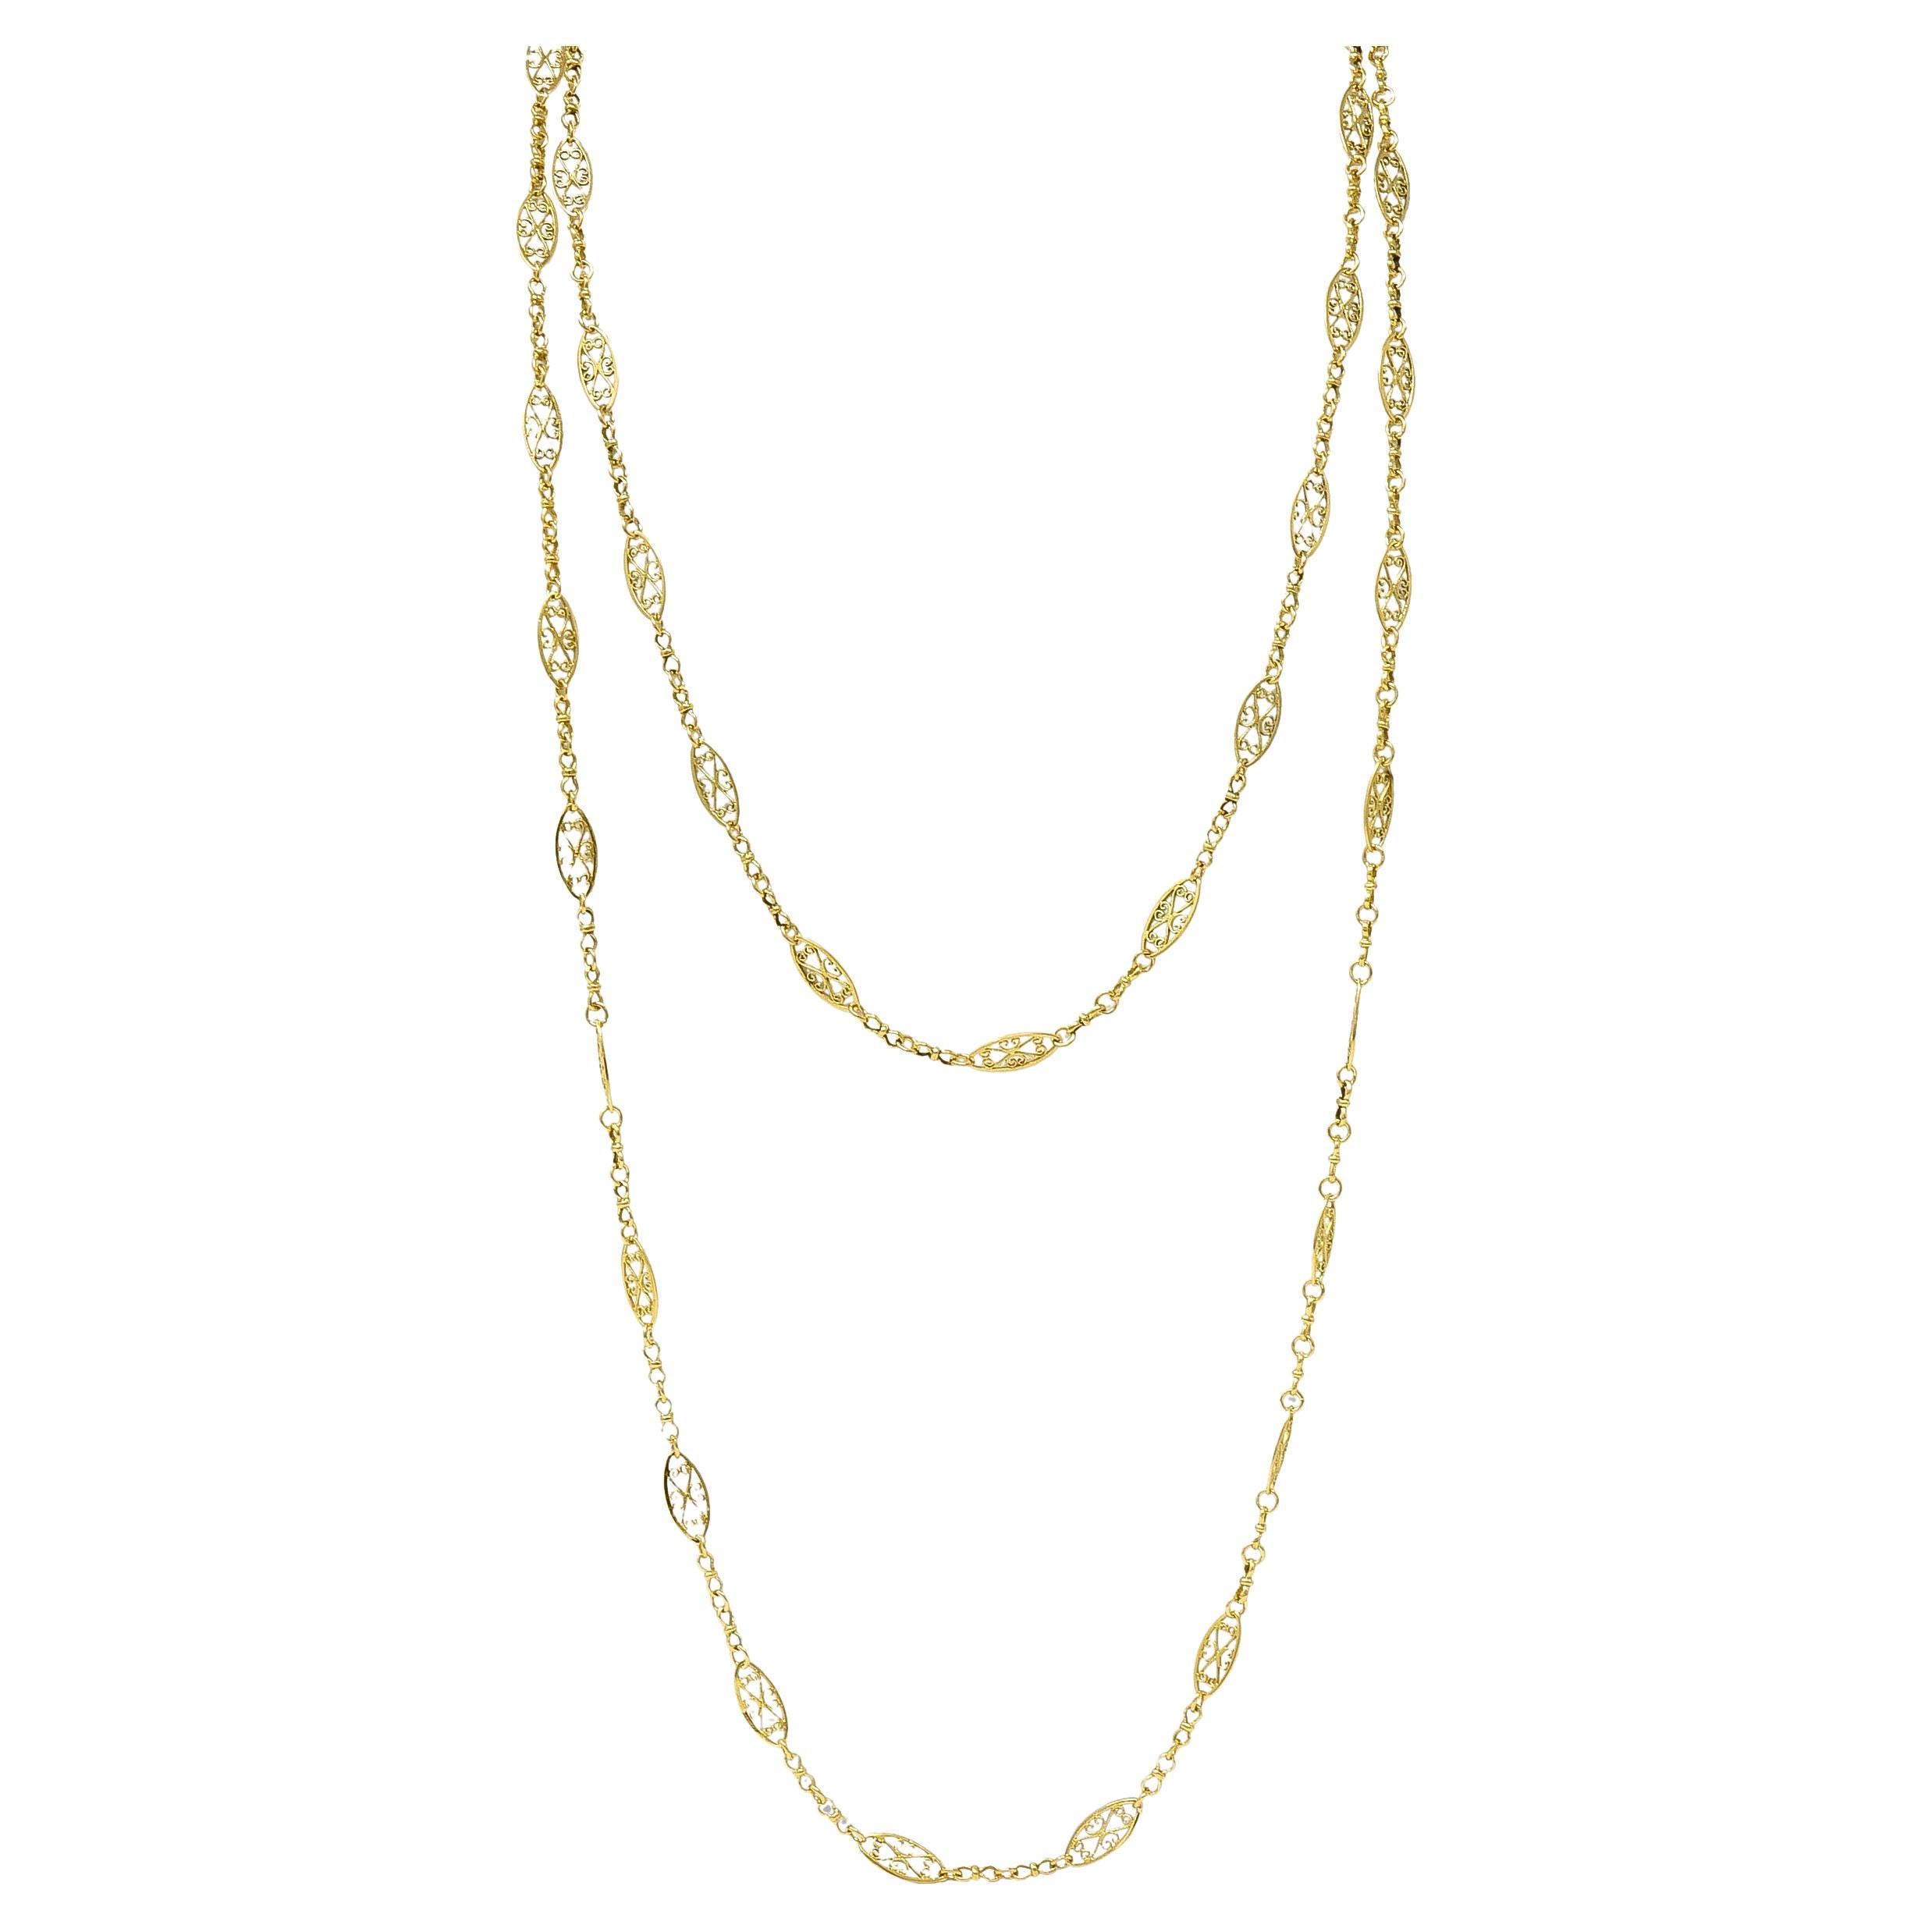 Long collier ancien en or jaune 18 carats à maillons en forme de cœur de style victorien français